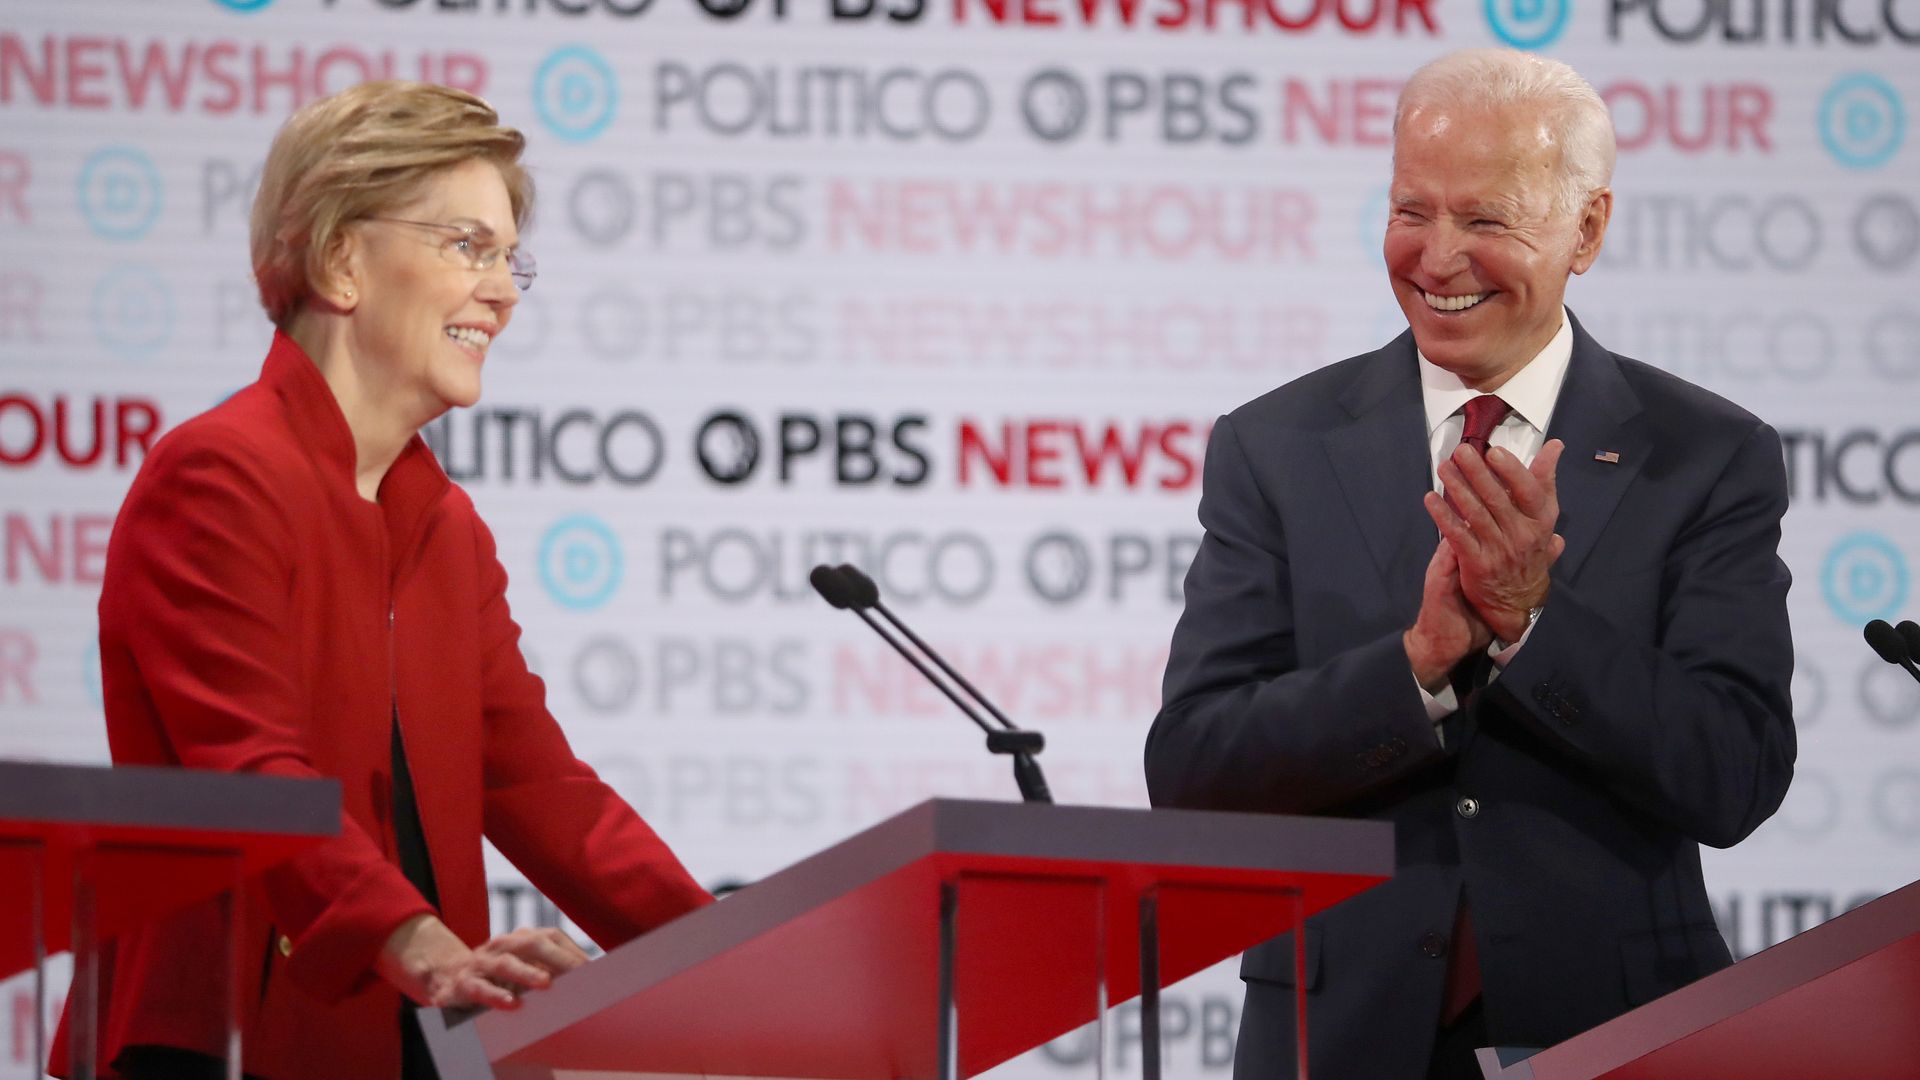 Joe Biden claps in the direction of Elizabeth Warren during a primary debate in December